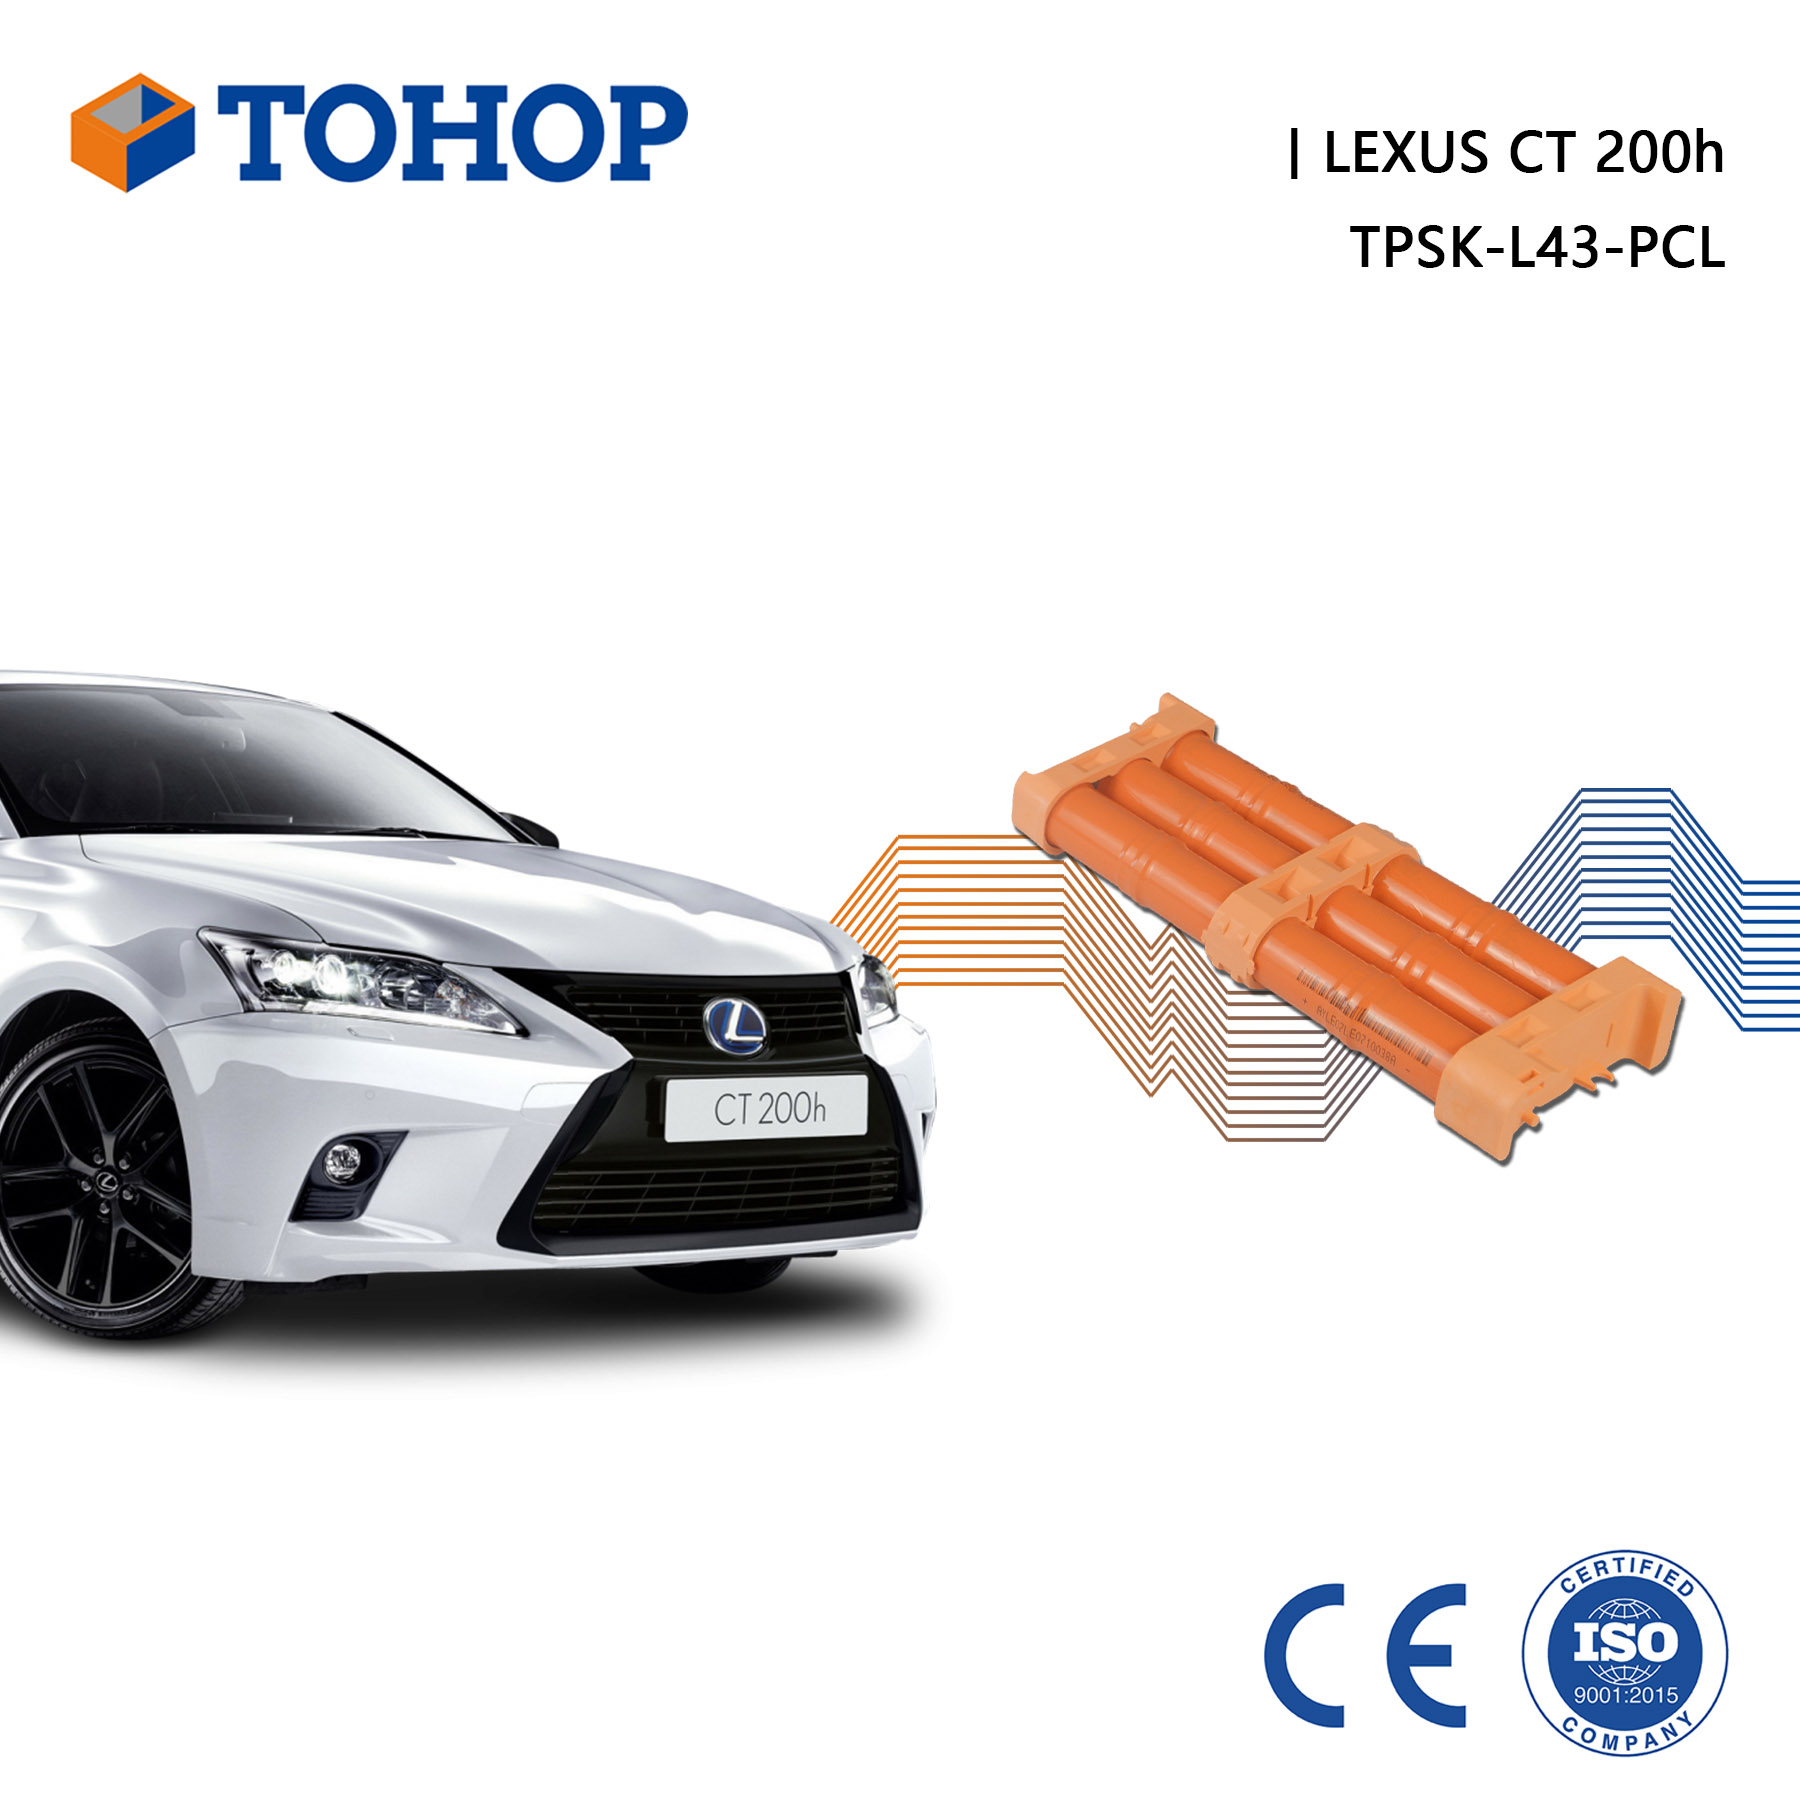 Batterie hybride Lexus CT200h 14.4V 6.5Ah pour voiture